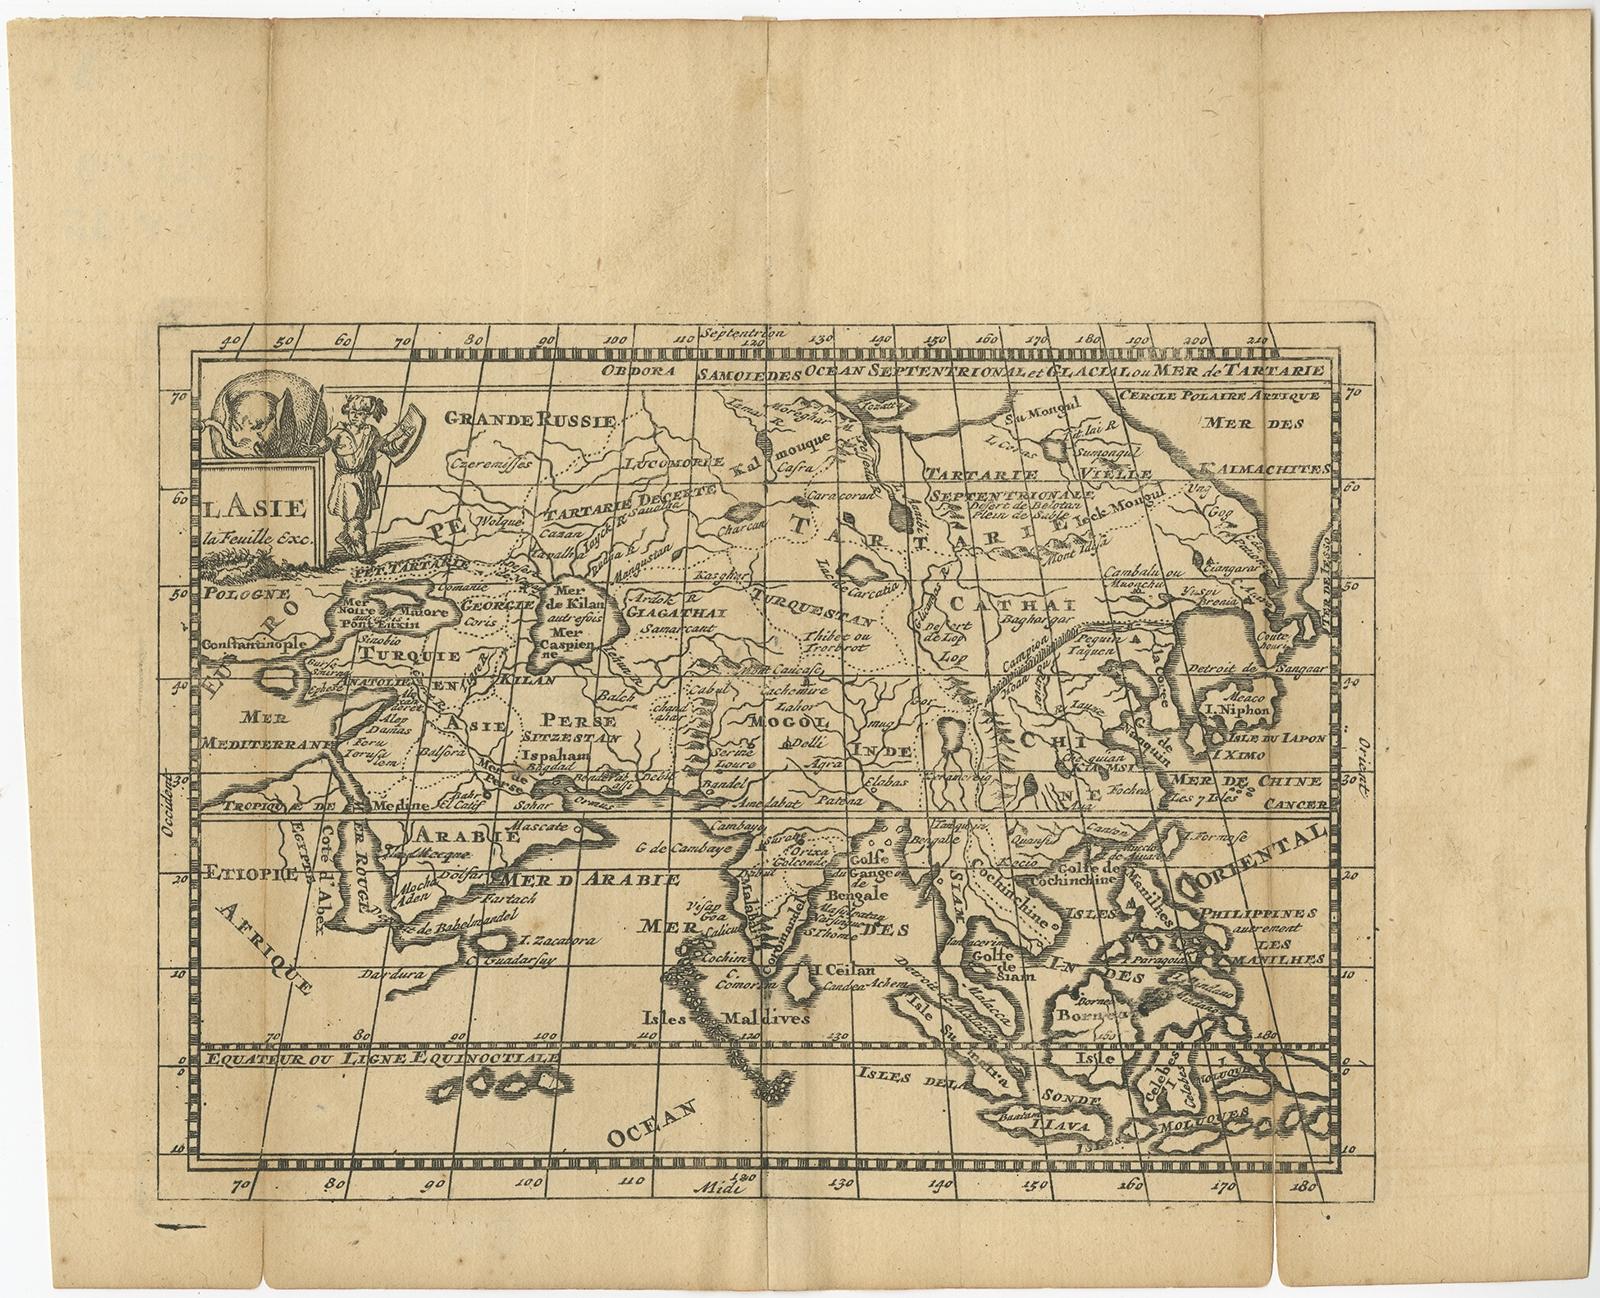 Carte ancienne intitulée 'L'Asie la feuille exc'. Ancienne carte de l'Asie. La carte contient plusieurs côtes mal formées et des îles déformées avec un petit cartouche tenu par un éléphant dans le coin supérieur nord-ouest. Source inconnue, à